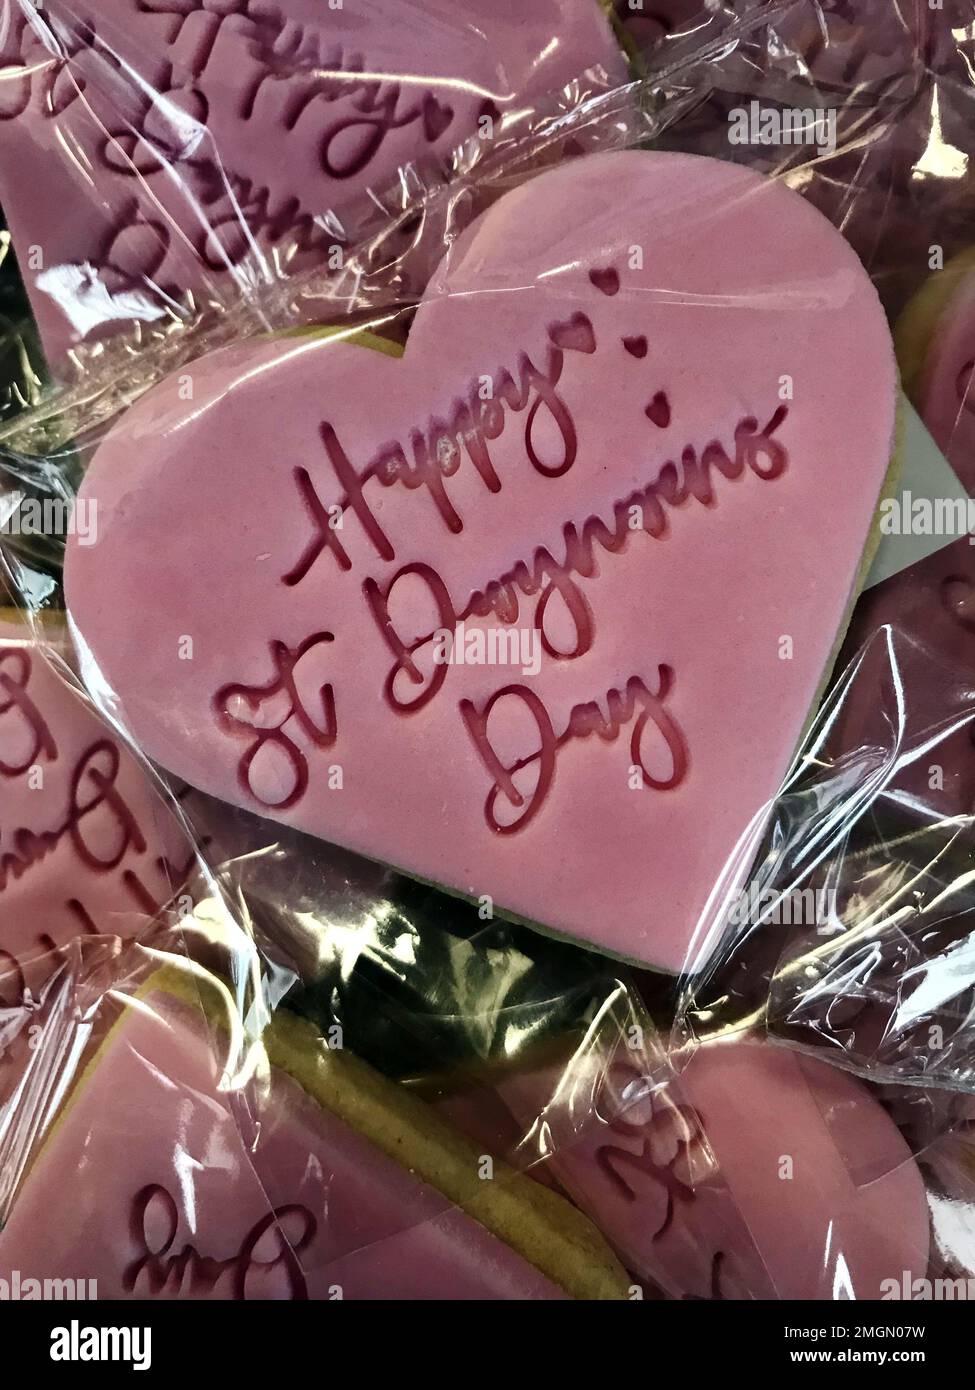 Biscotti a forma di cuore rosa tradizionalmente dati in Galles il giorno di San Dwynwen (Dydd Santes Dwynwen), il santo patrono gallese degli amanti, come San Valentino Foto Stock